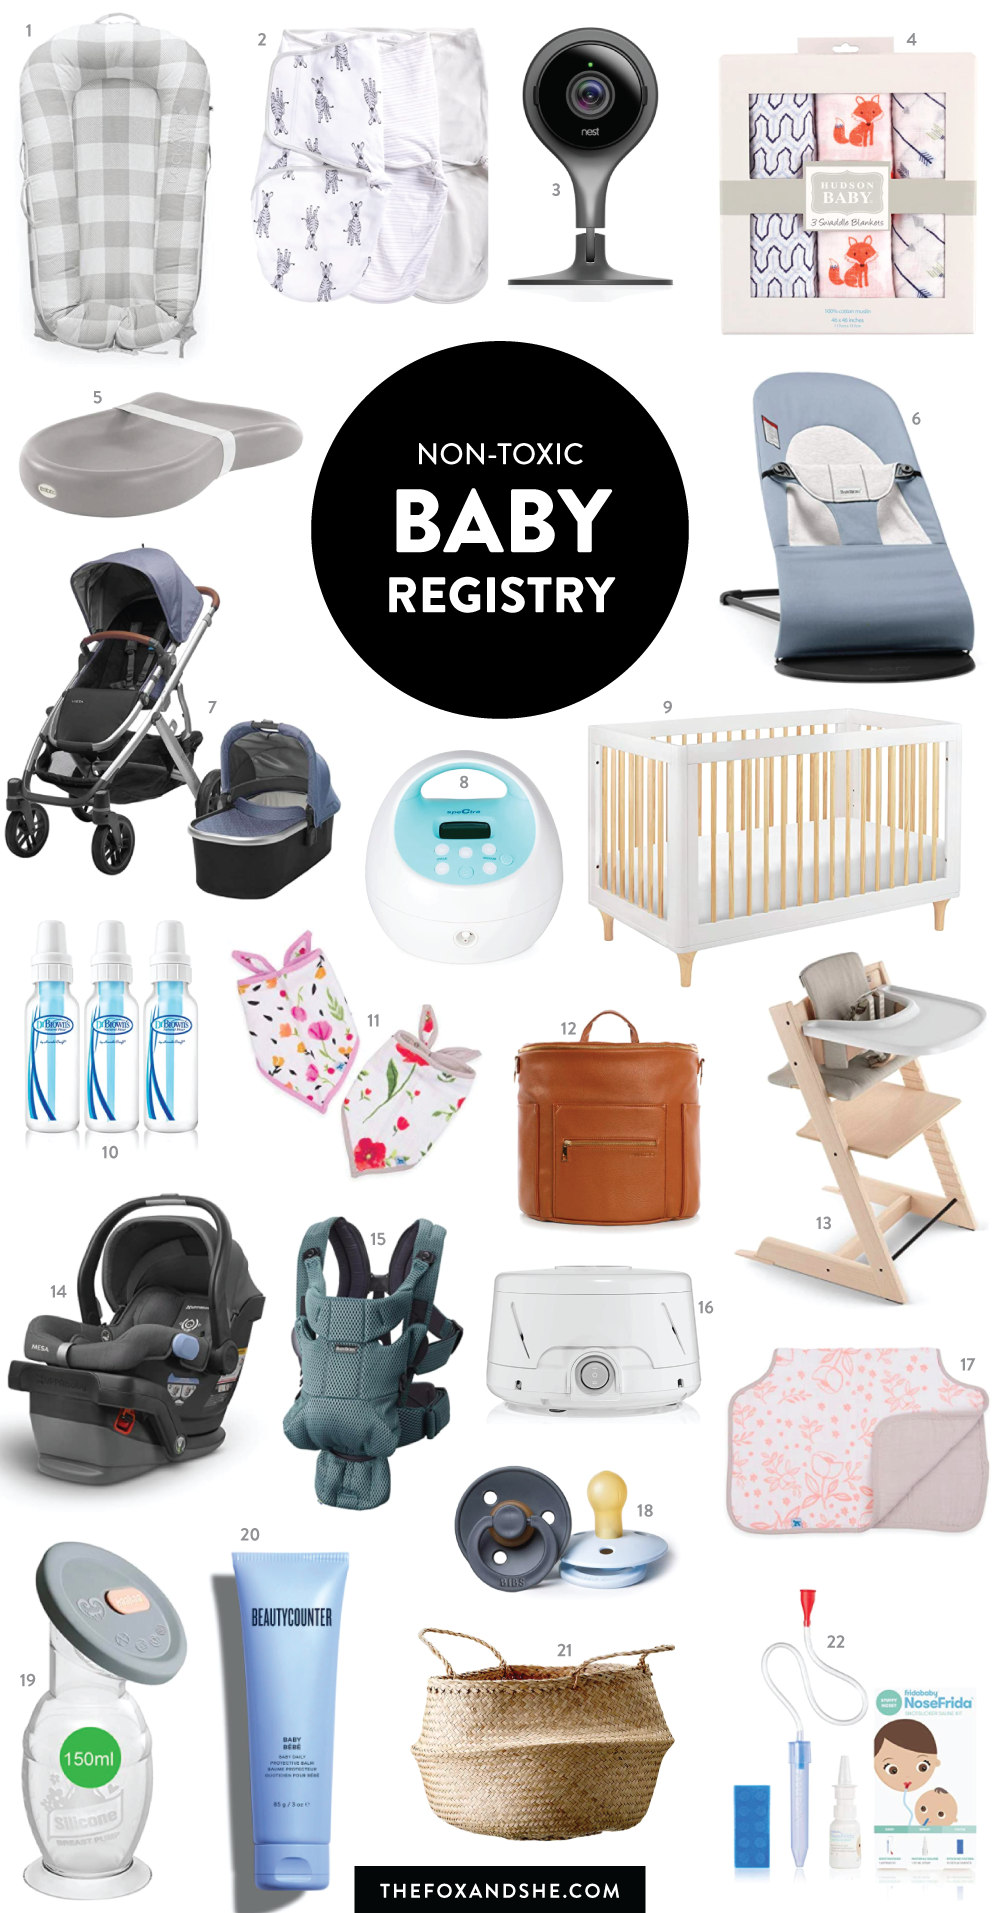 popular baby registry items